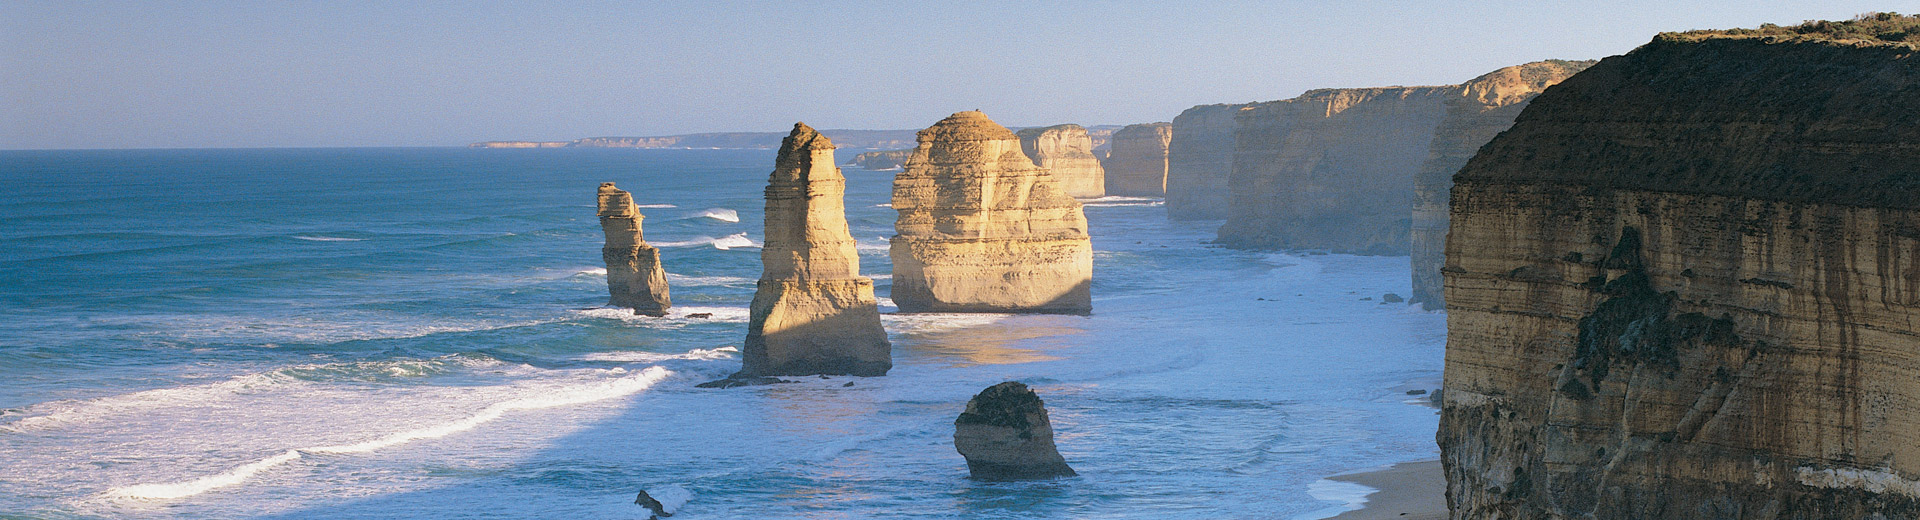 澳大利亚（澳洲）大洋路 - 十二使徒岩